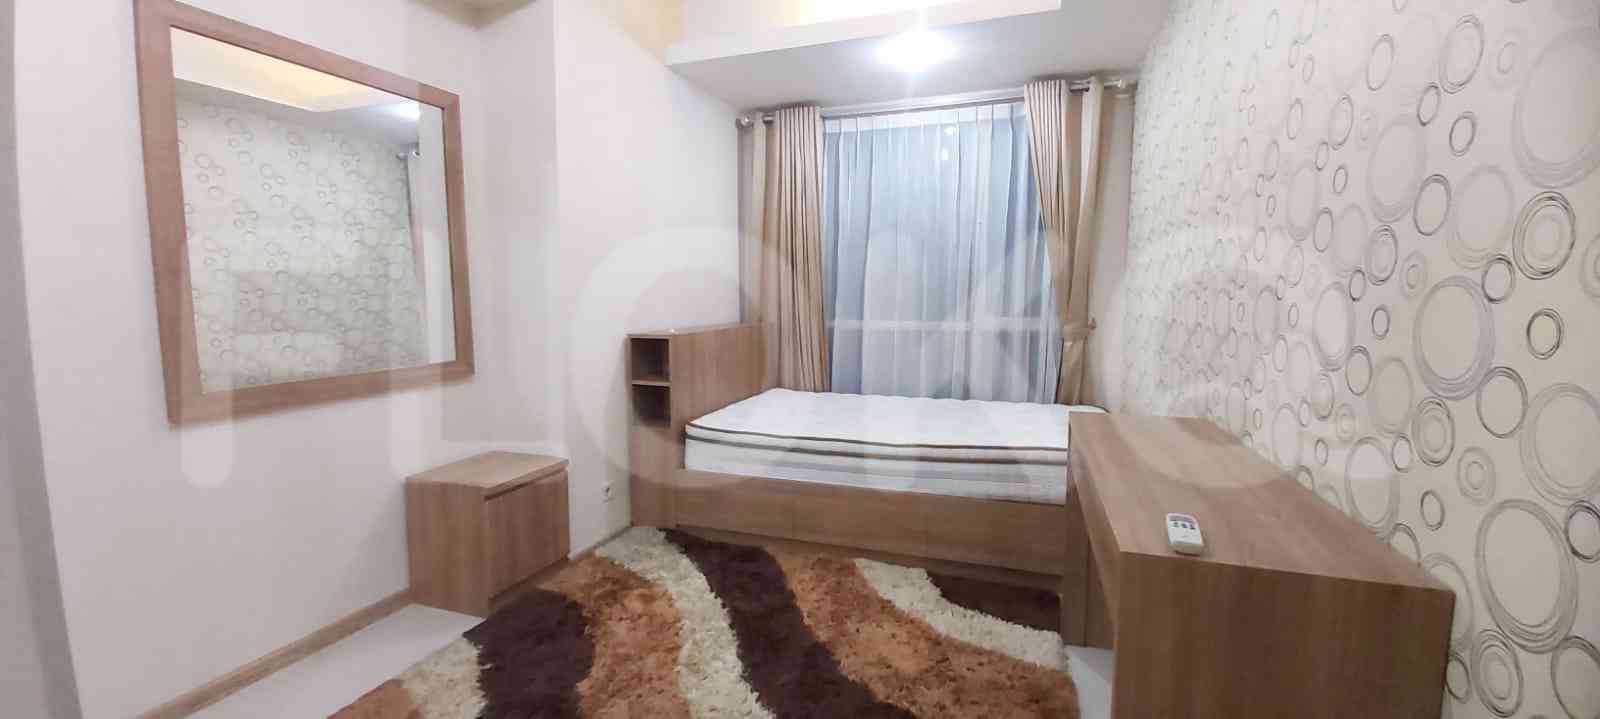 2 Bedroom on 22nd Floor for Rent in Casa Grande - ftef87 6